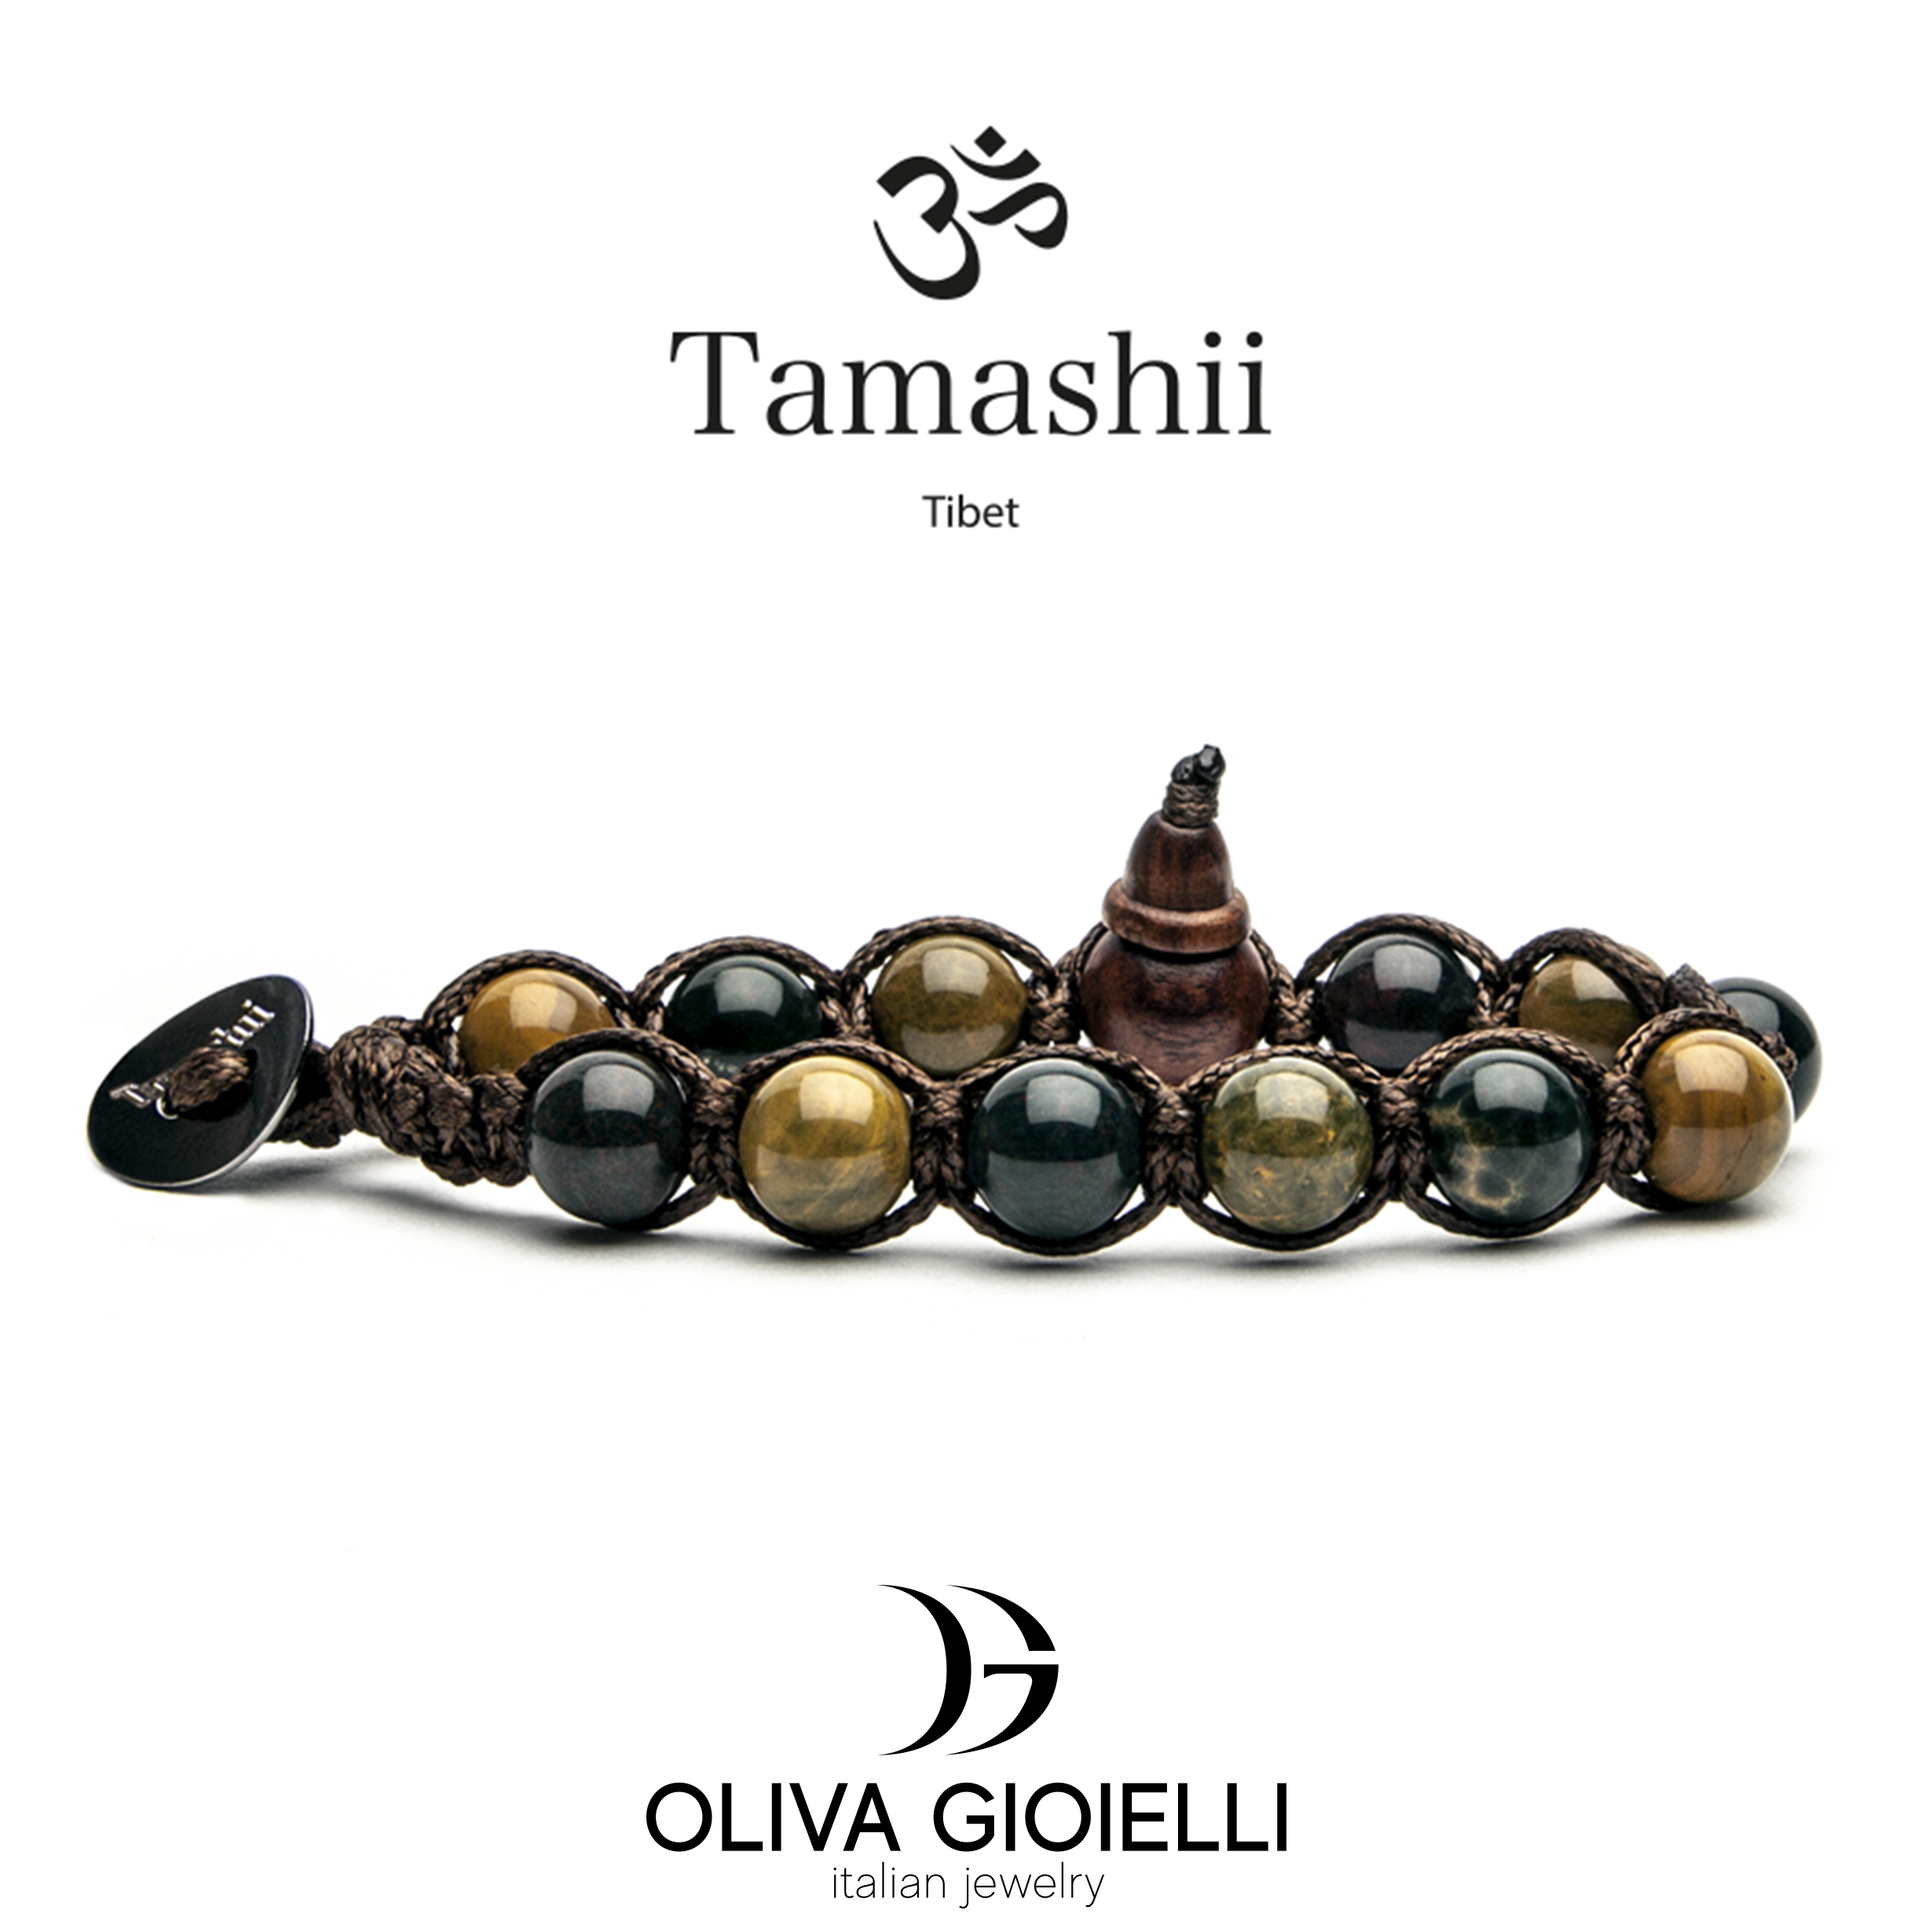 Bracciale-Tibetano-Tamashii-Tibet-Pietre-Naturali-BHS900-222-Ocean-Stone